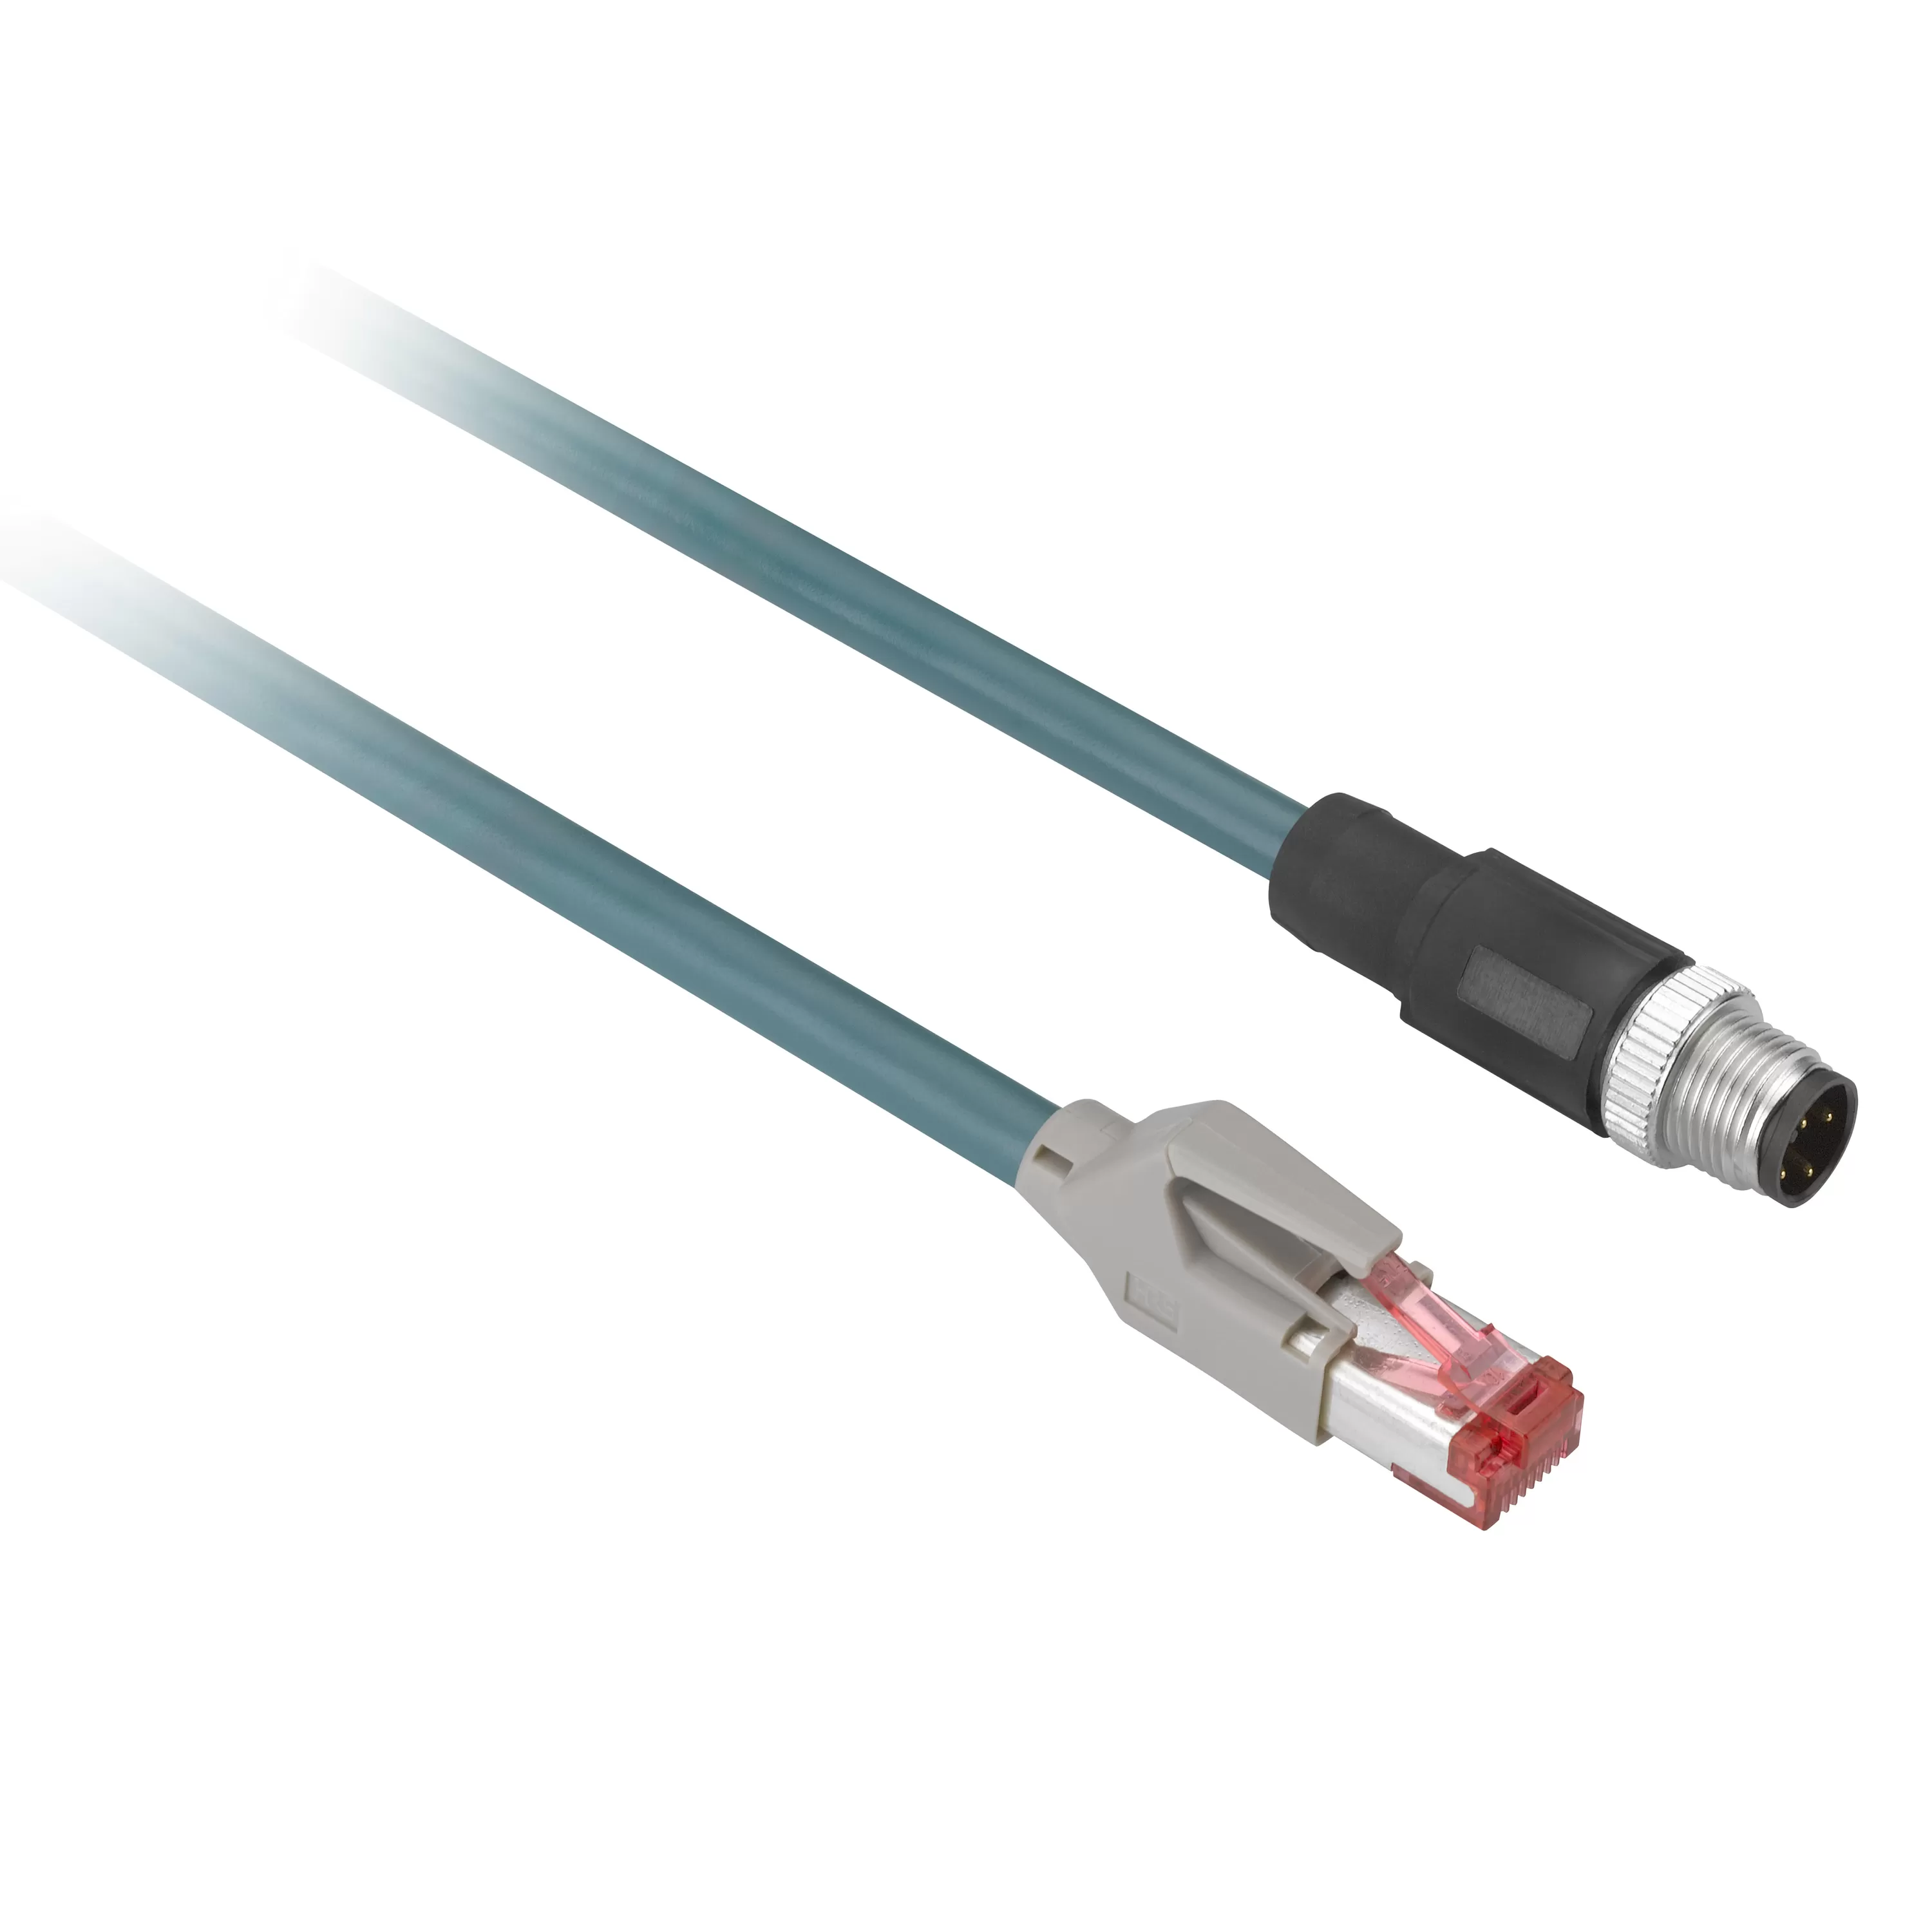 Schneider Electric XG RFID Kabel M12 mit Kodierung D für RJ45 - Ethernet - 3 m XGSZ12E4503